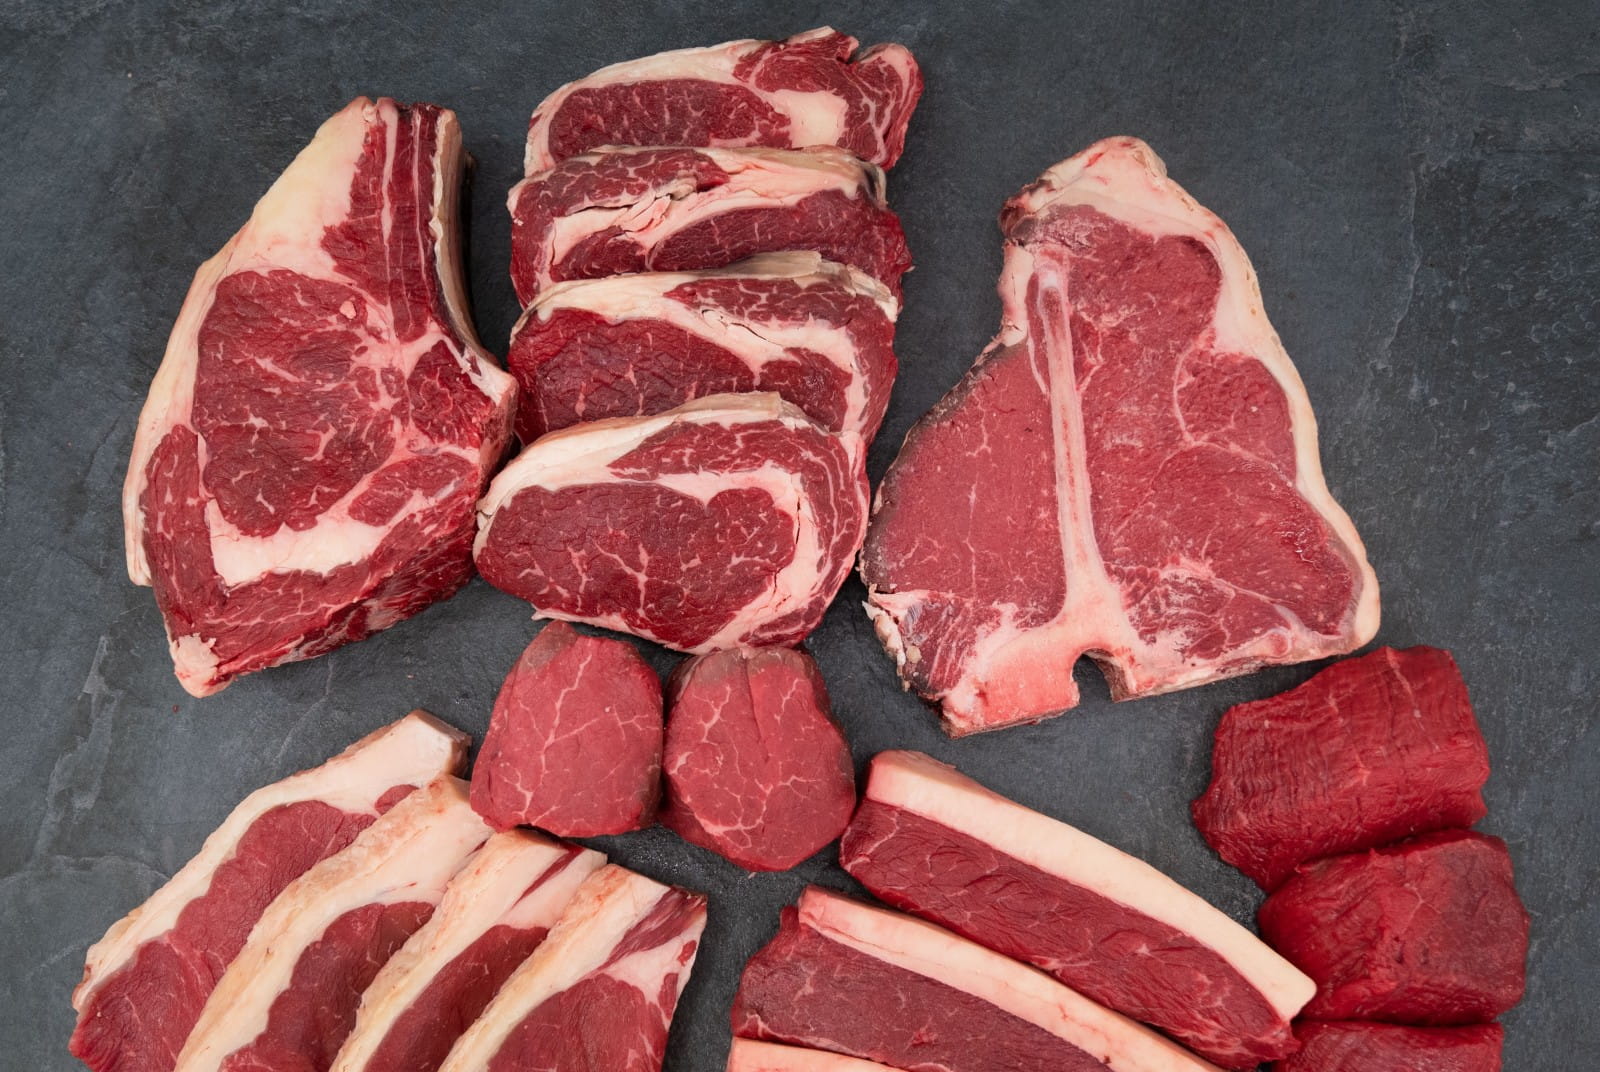 Win a stupendous steak box from award-winning butcher Peter Hannan